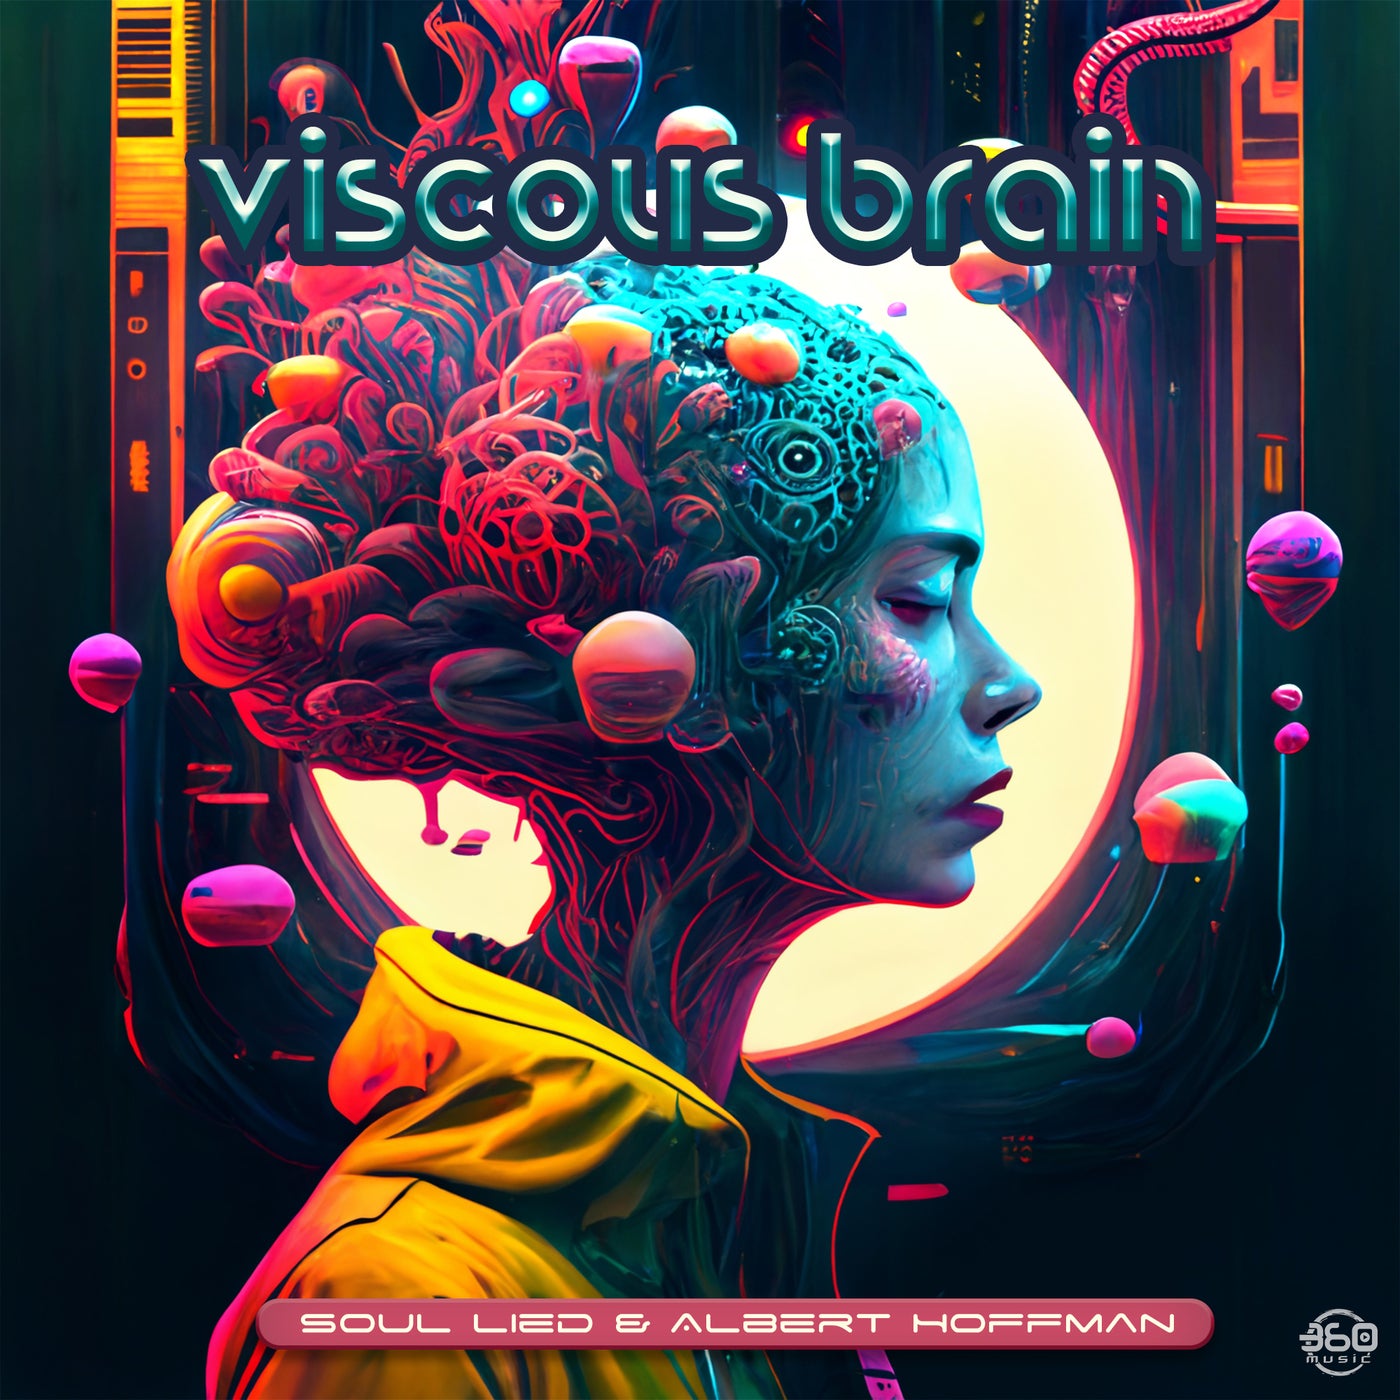 Viscous Brain (Original Mix) by Soul LieD, Albert Hoffman on Beatport